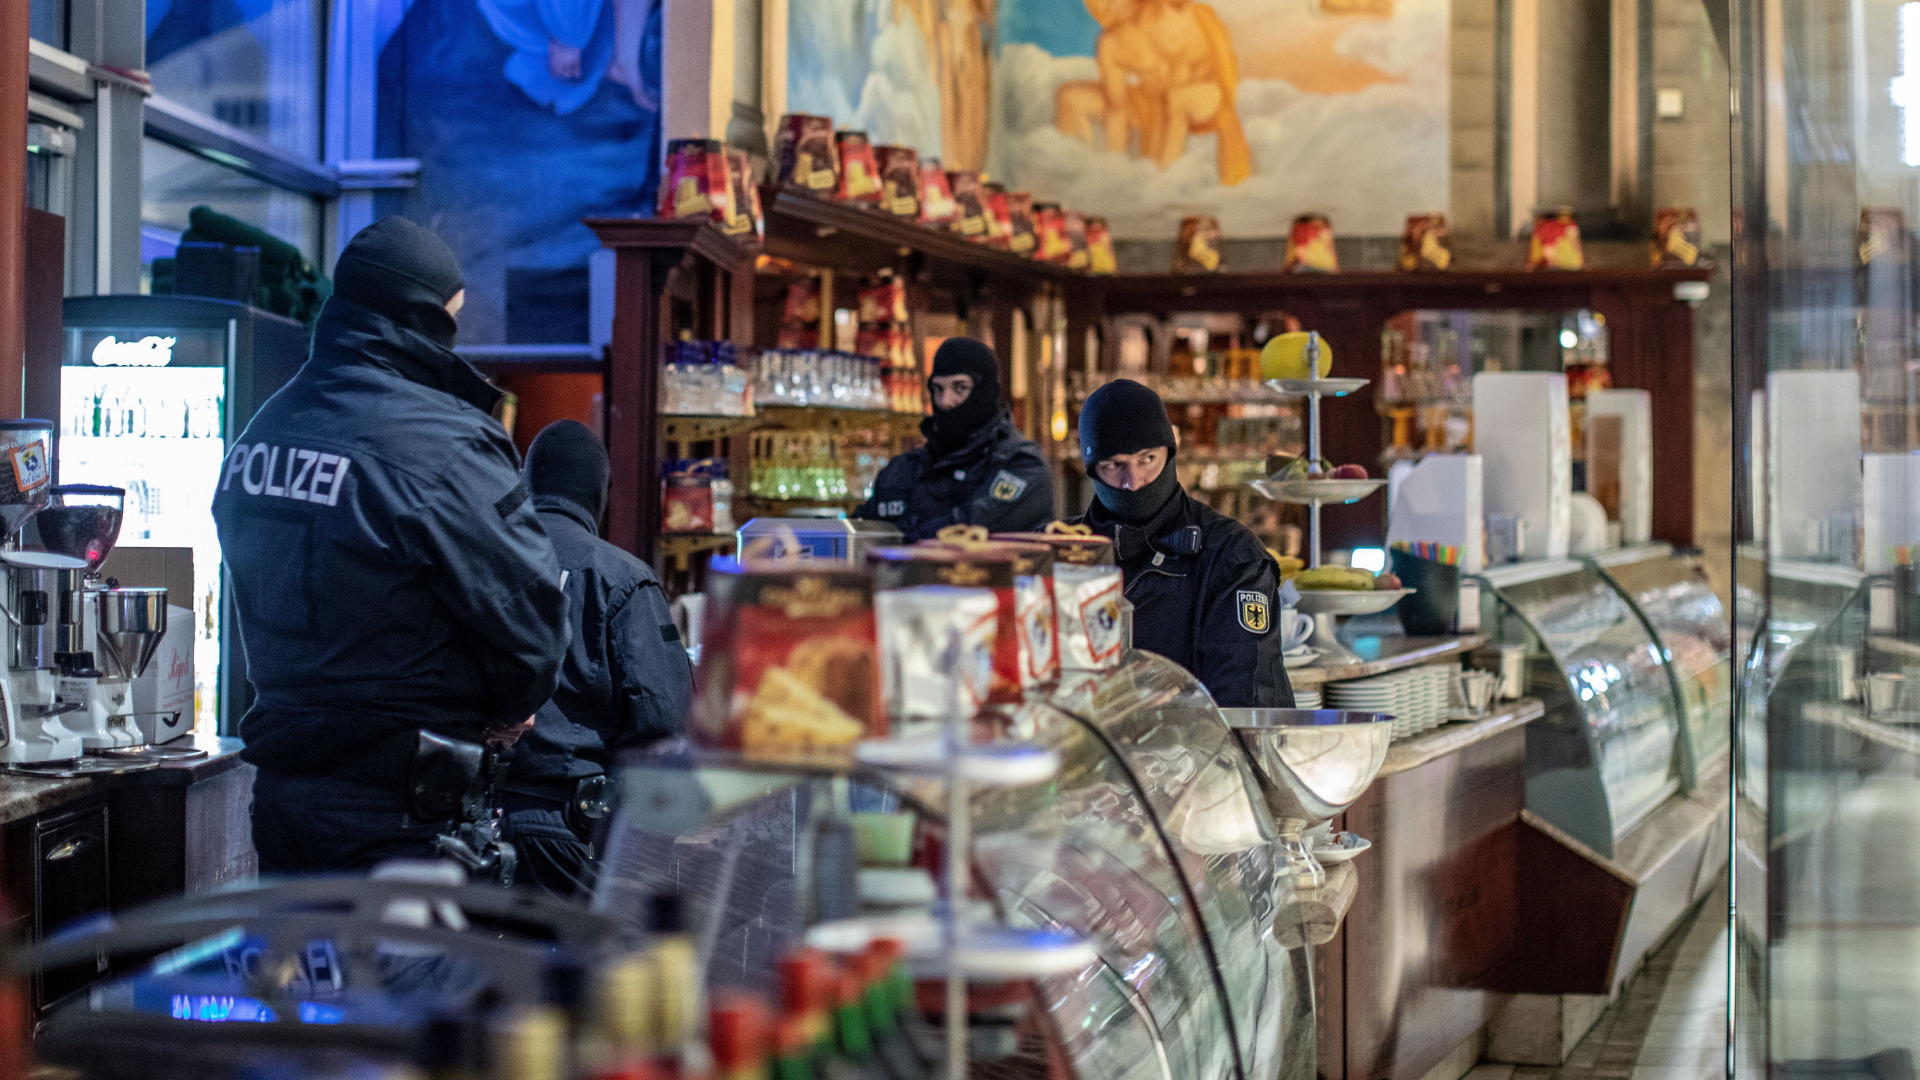  Polizisten stehen in einem Eiscafé im Citypalais in der Duisburger Innenstadt | dpa